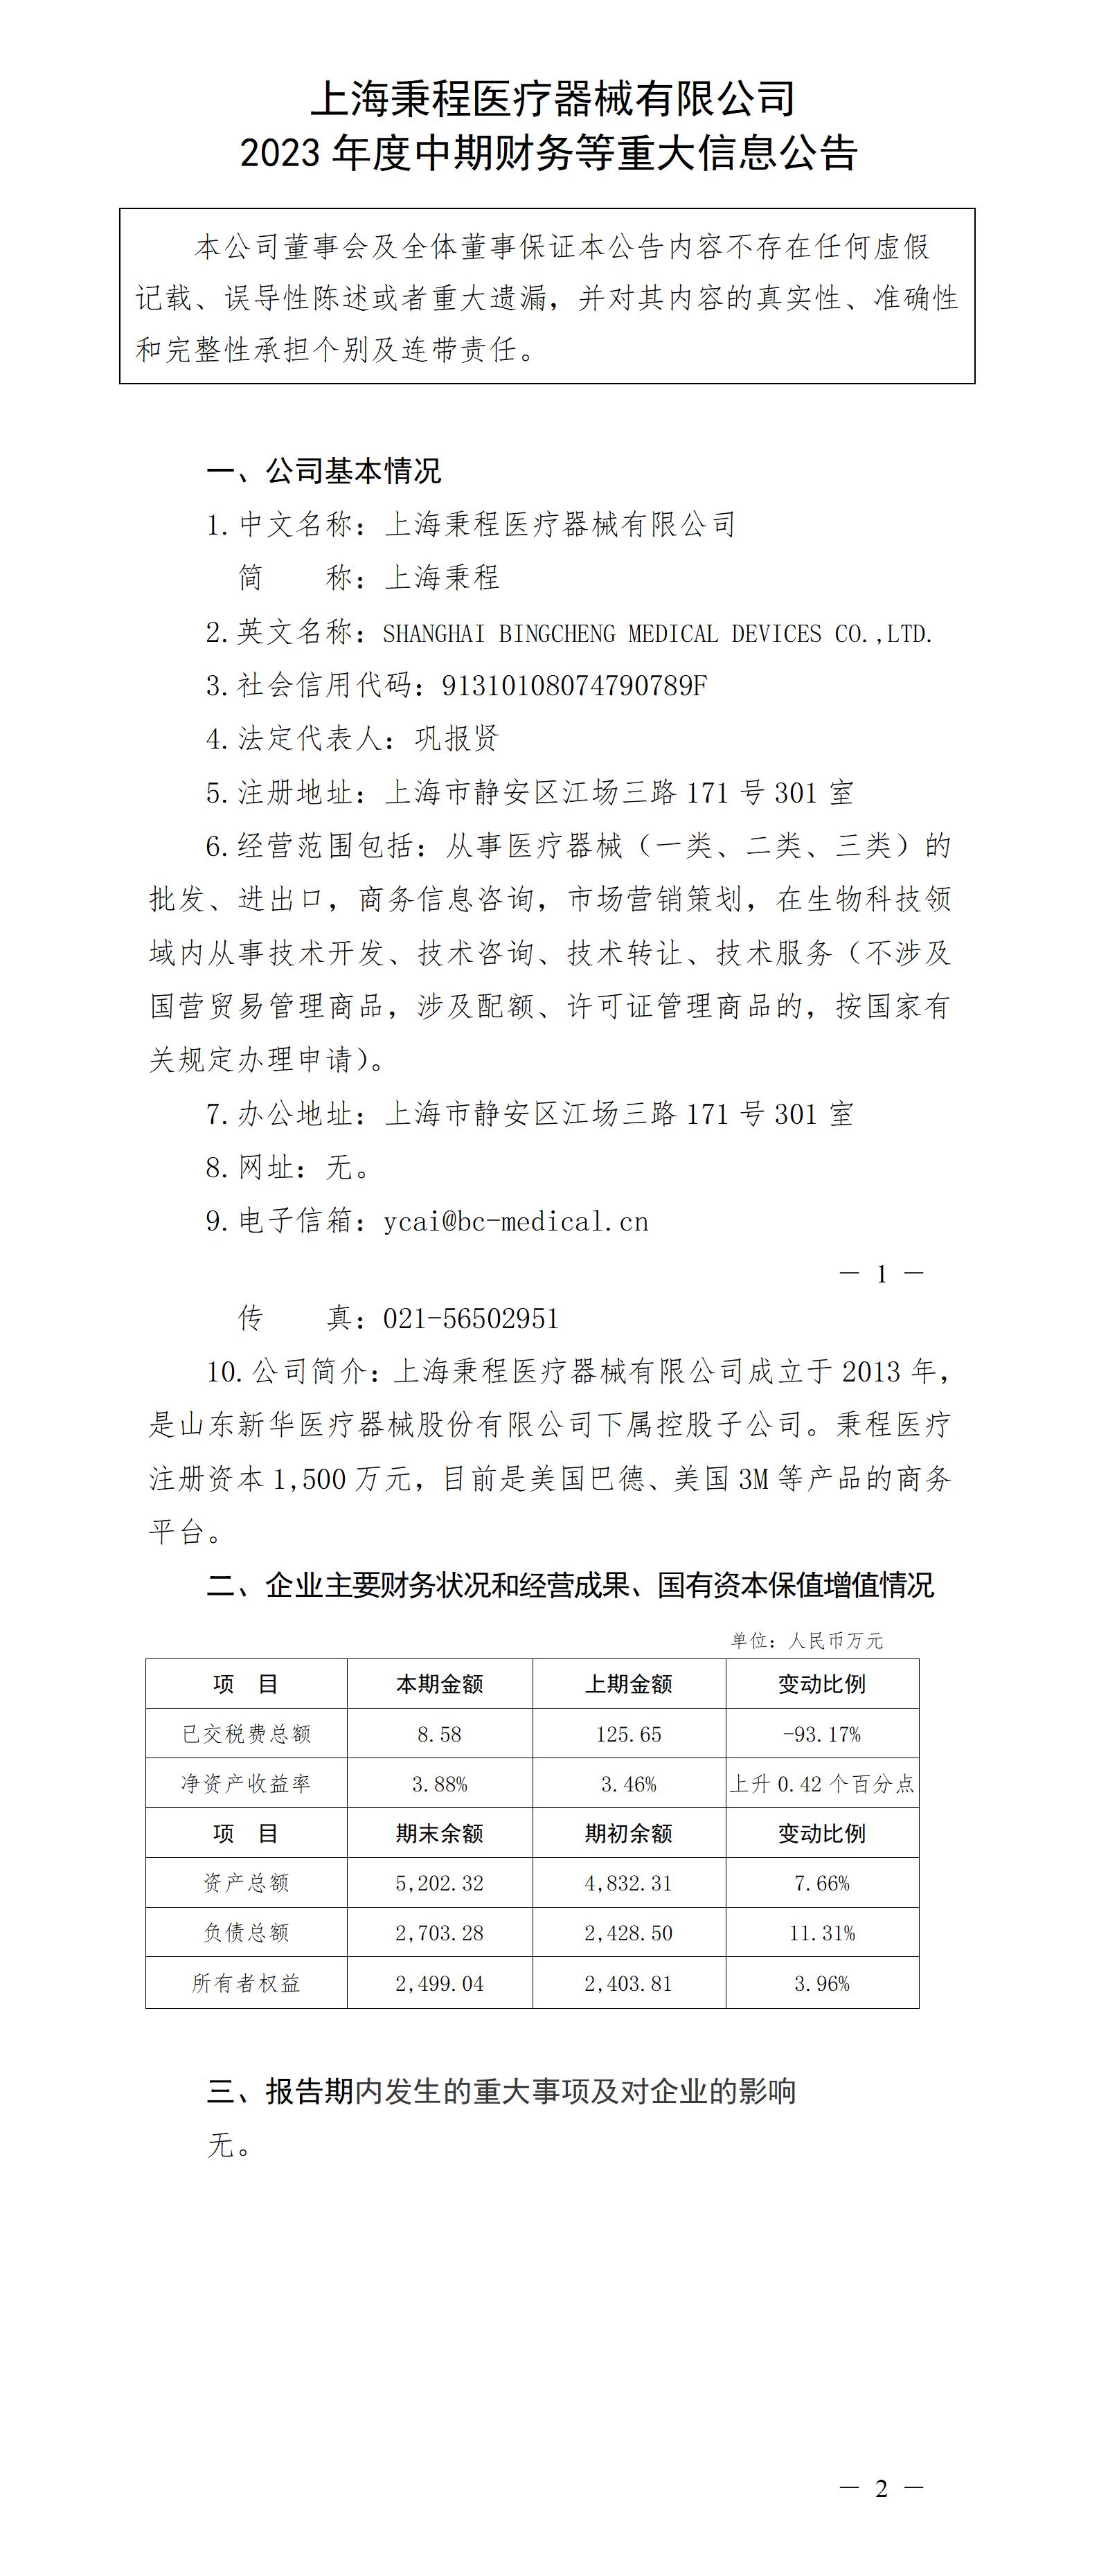 上海秉程醫療器械有限公司 2023年度中期財務等重大信息公告_01.jpg